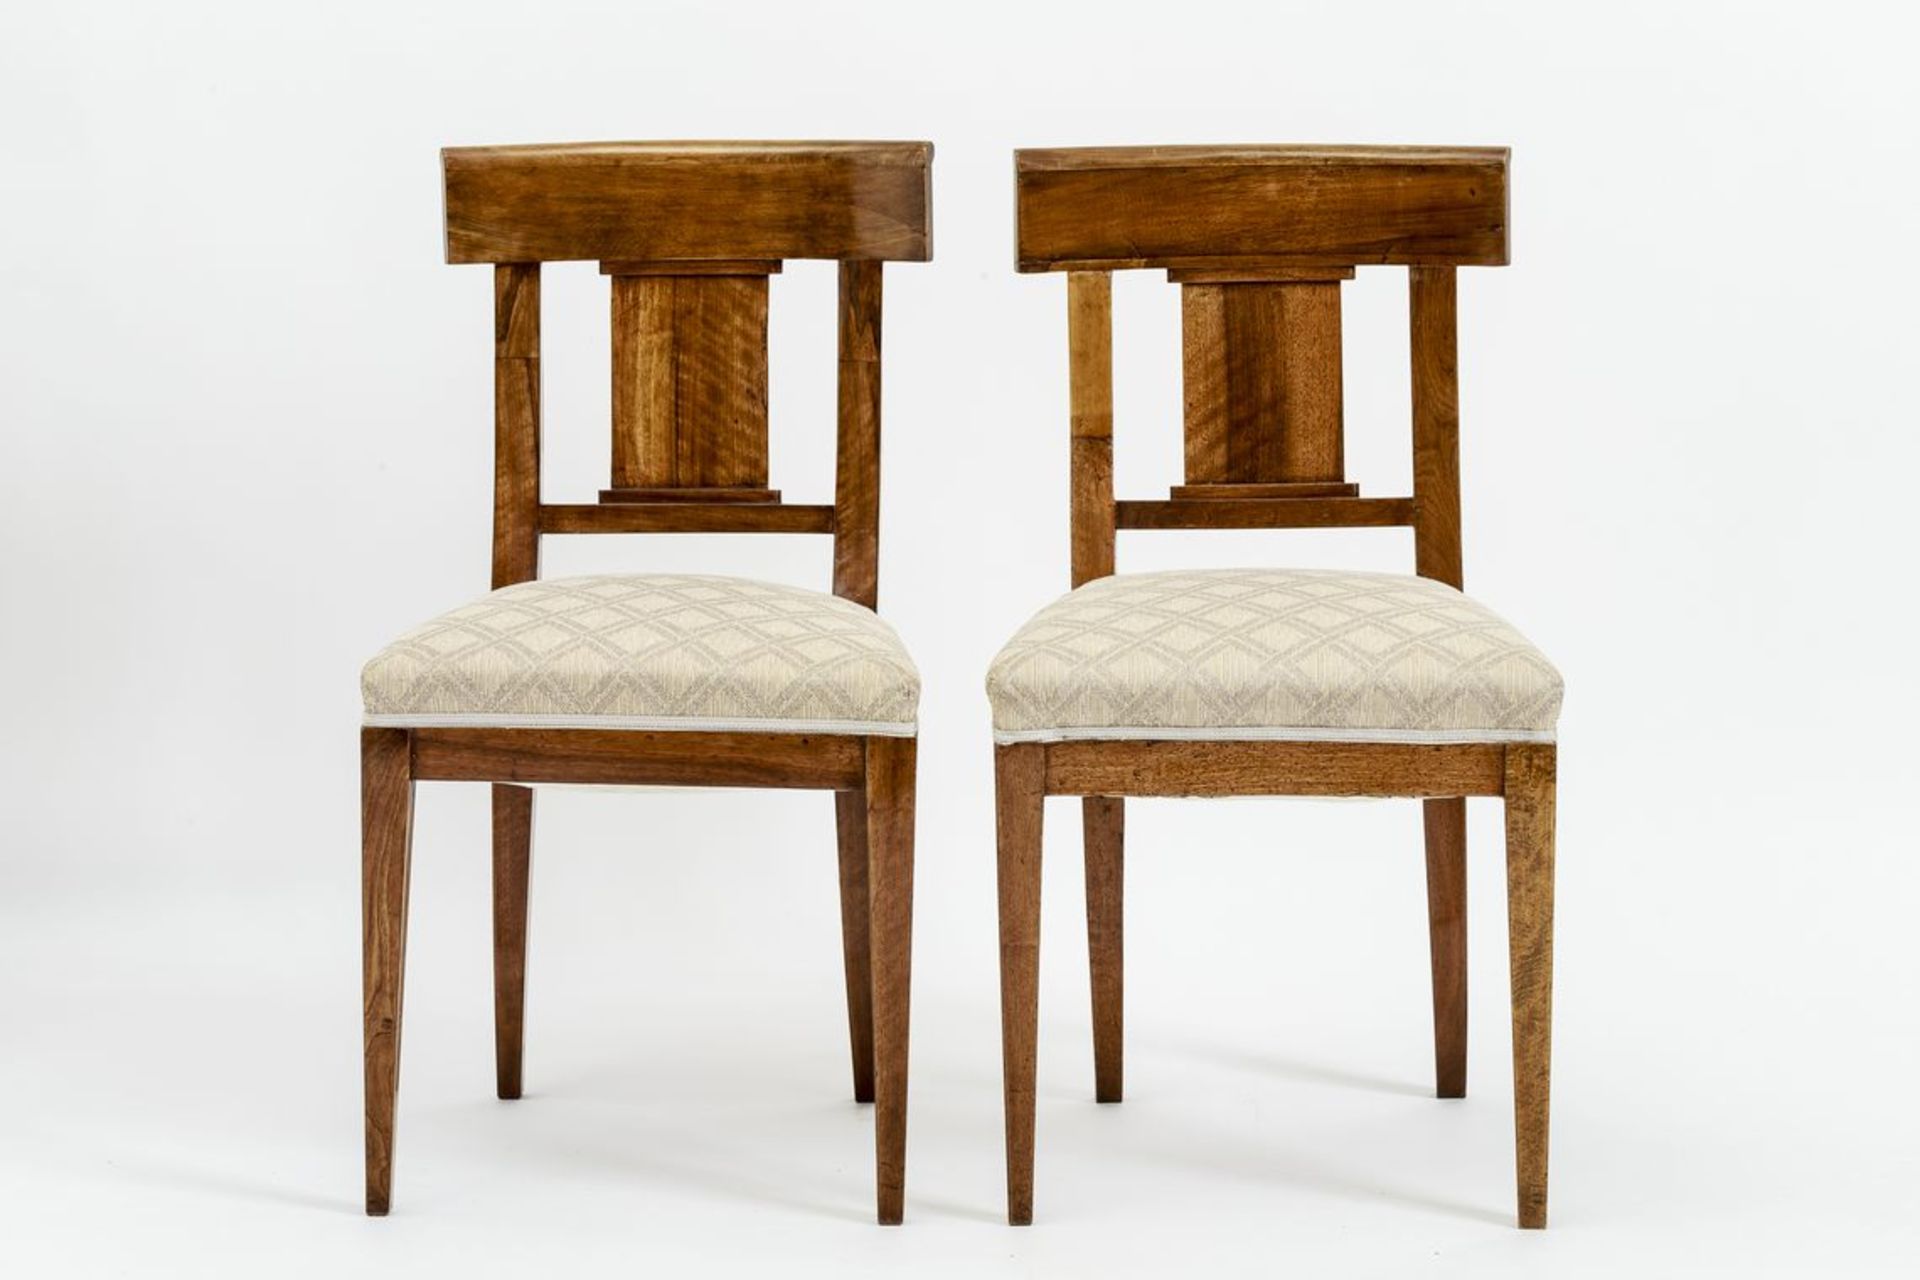 Paar Biedermeier-StühleNussbaum, auf konischen Beinen, trapezförmige, gepolsterte Sitzfläche.